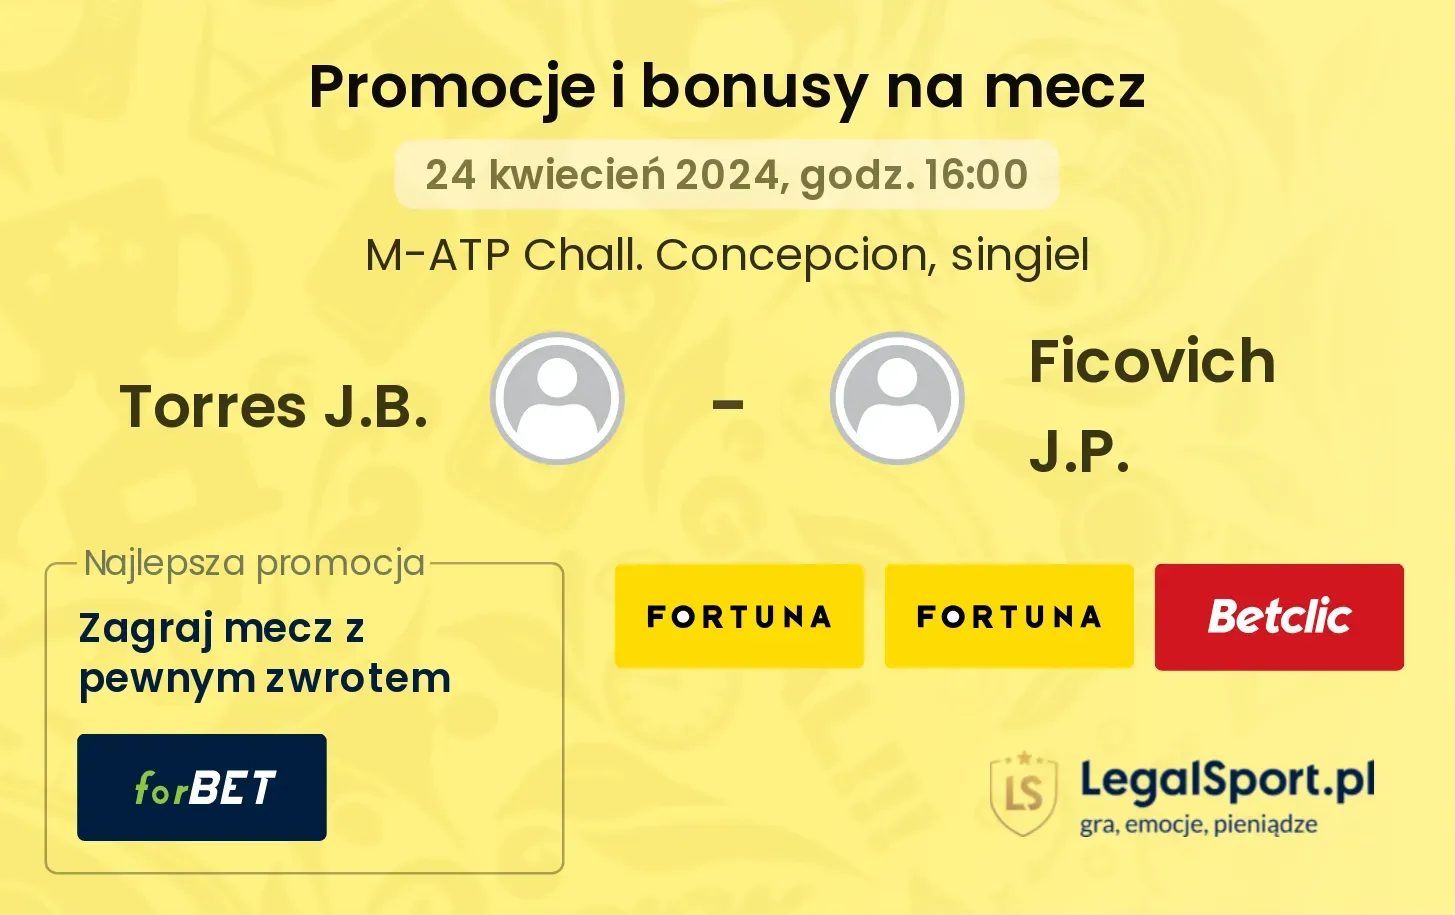 Torres J.B. - Ficovich J.P. promocje bonusy na mecz